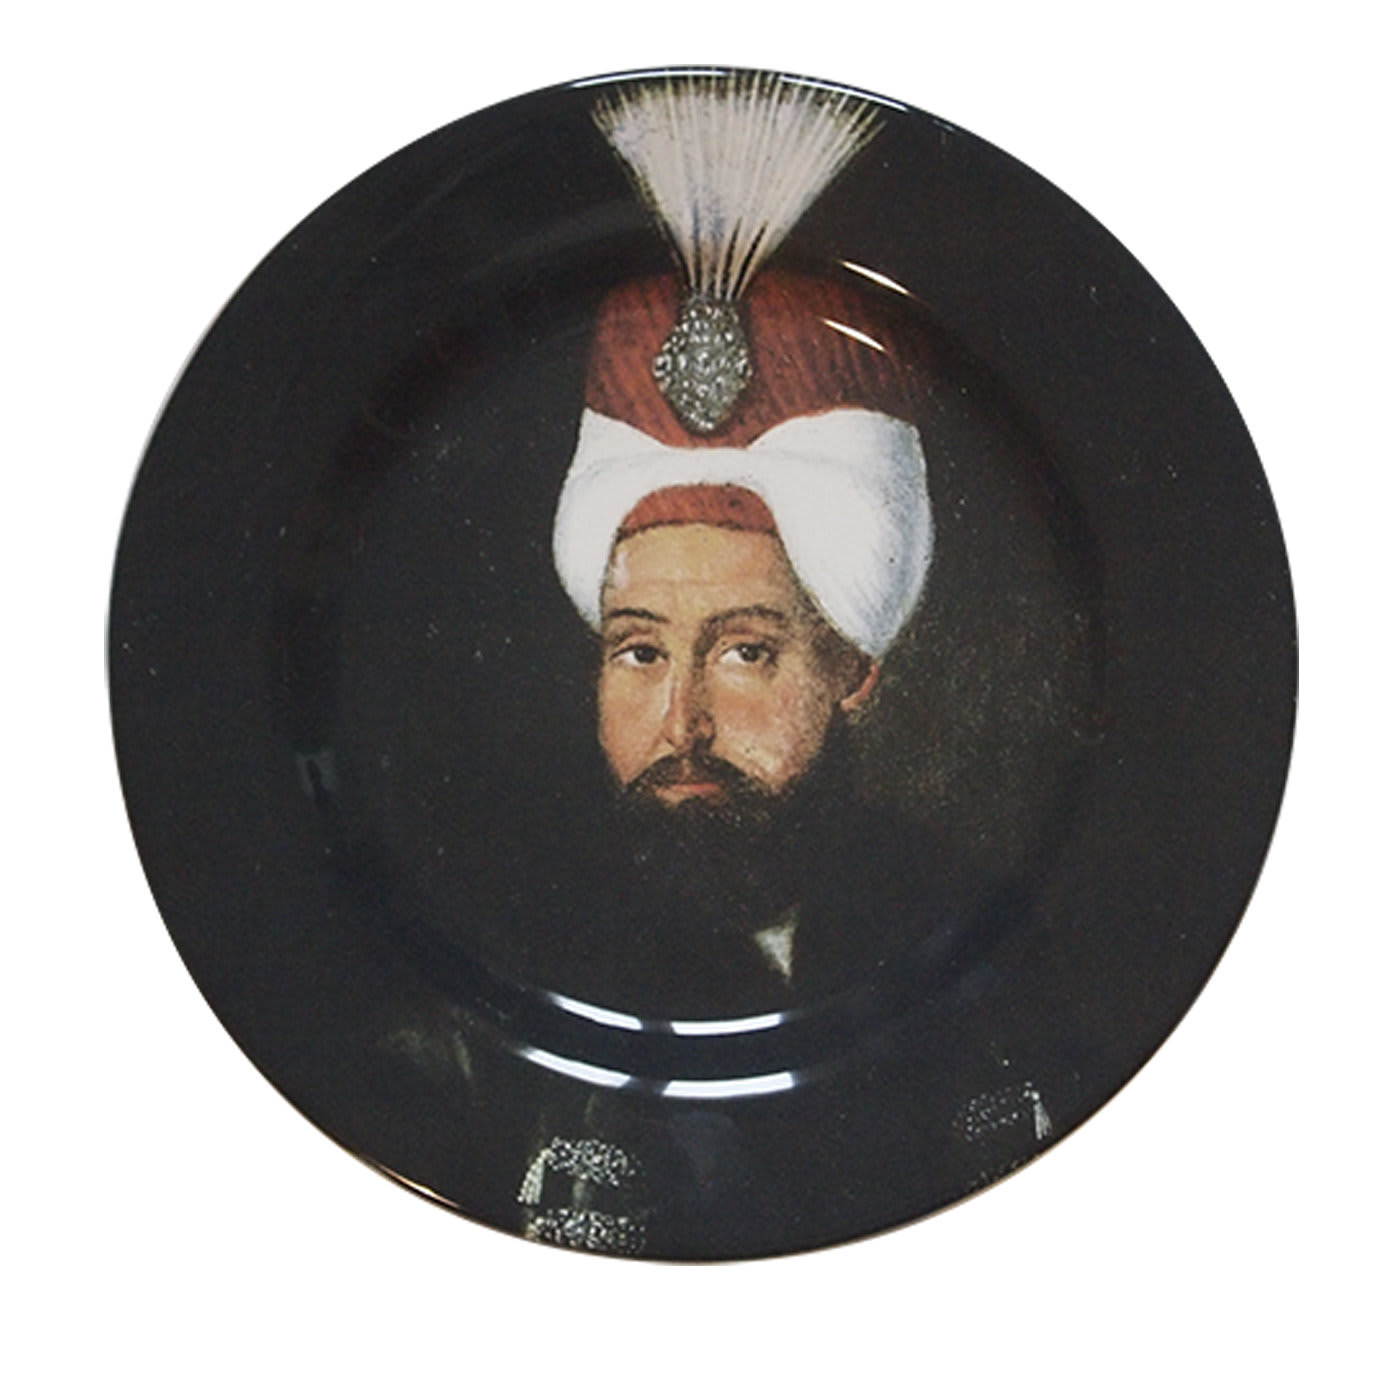 Sultan Collection Plate #3 - Bertrando Di Renzo